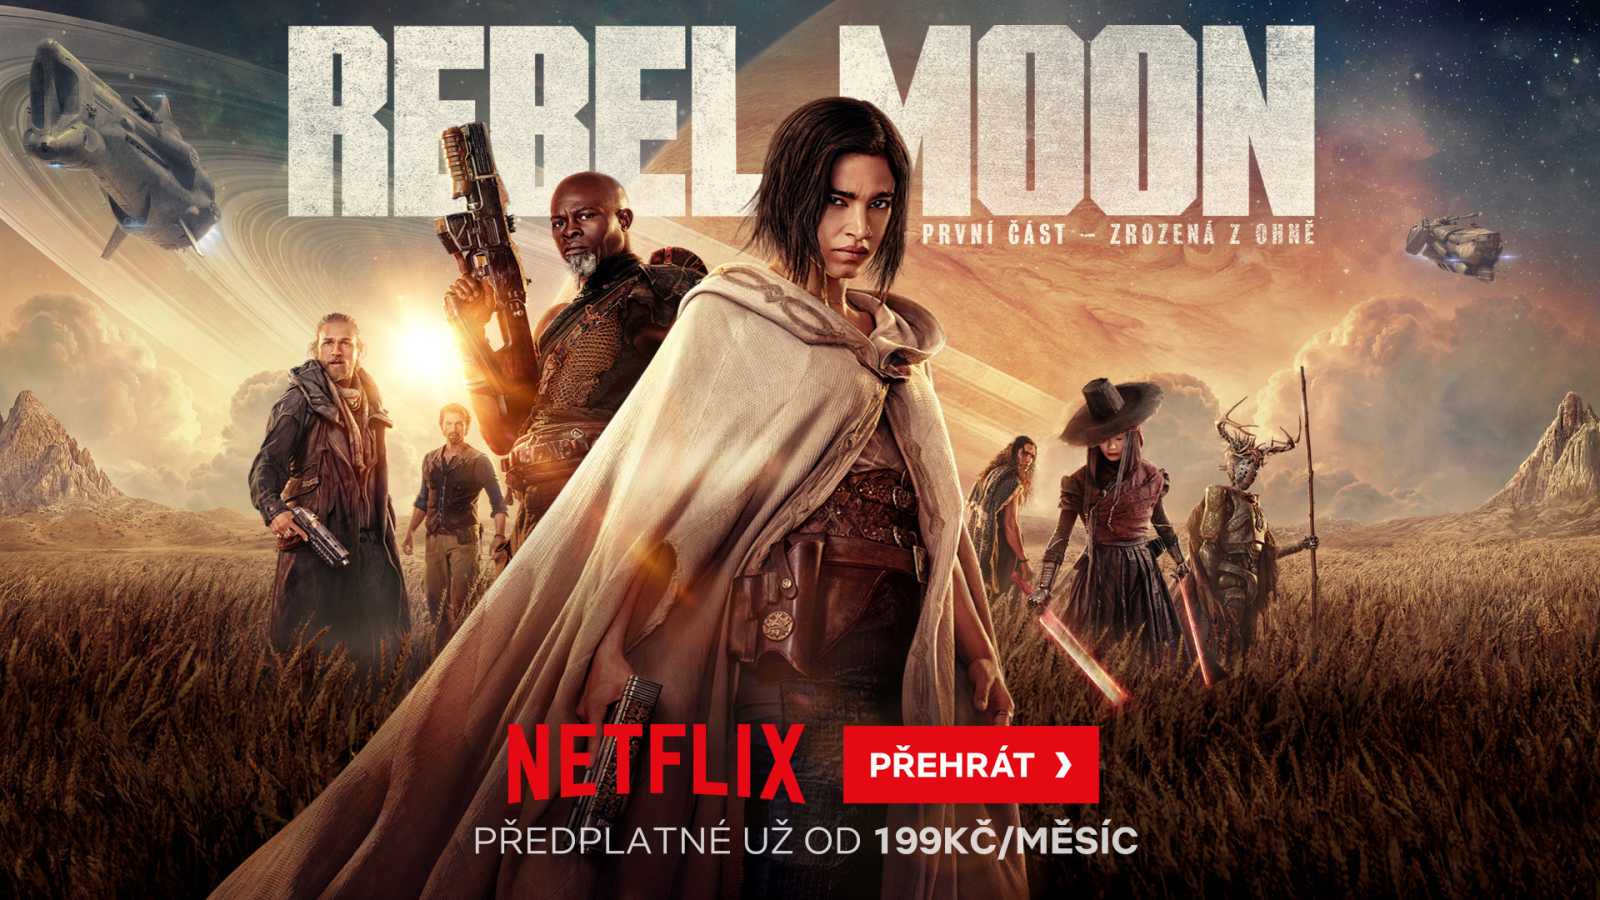 Na Netflix dorazila velkolepá sci-fi sága Rebel Moon: První část – Zrozená z ohně